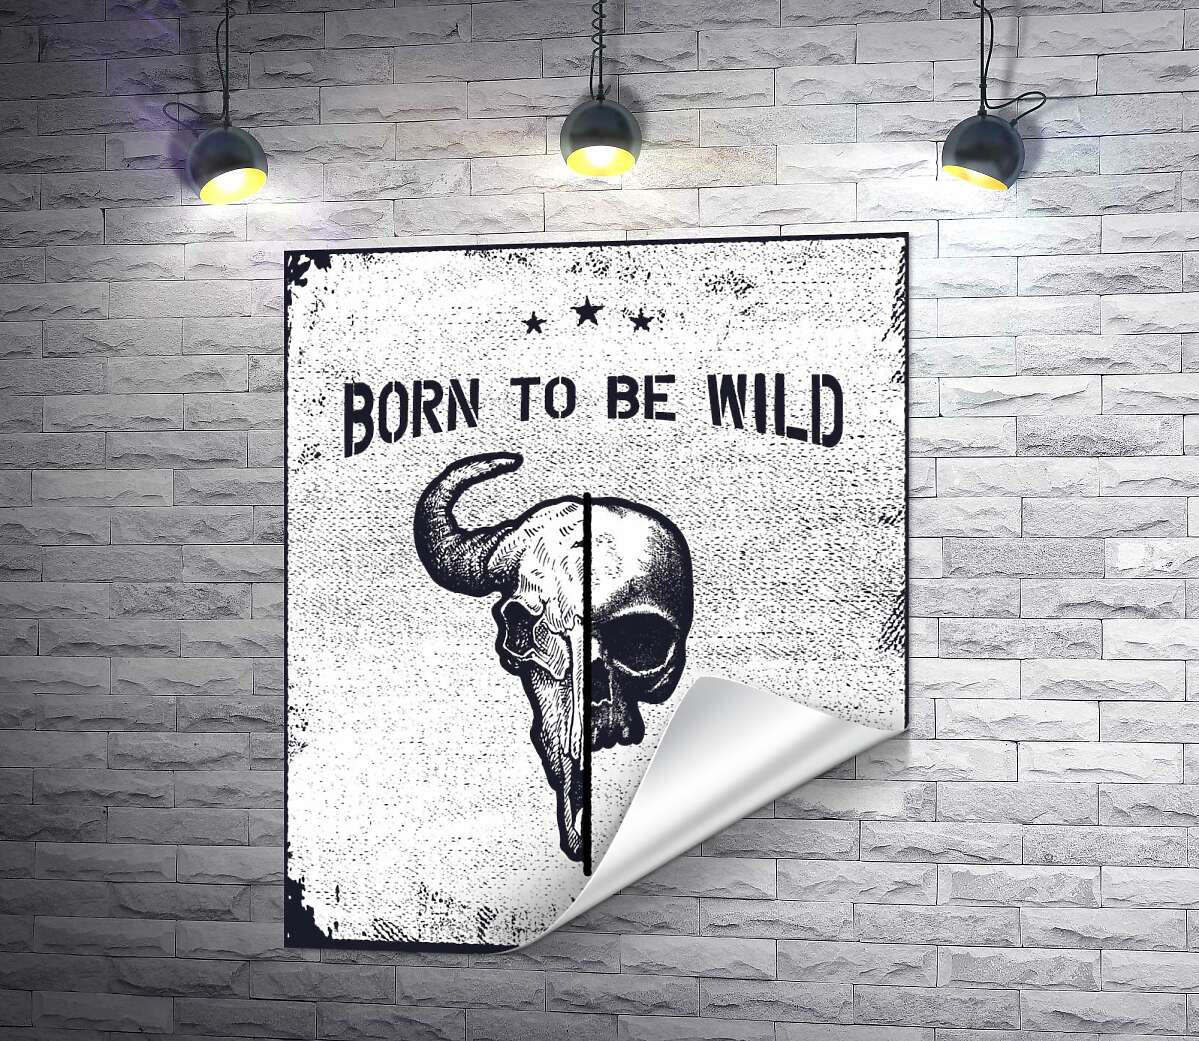 печать Соединение черепов человека и быка под фразой "born to be wild"